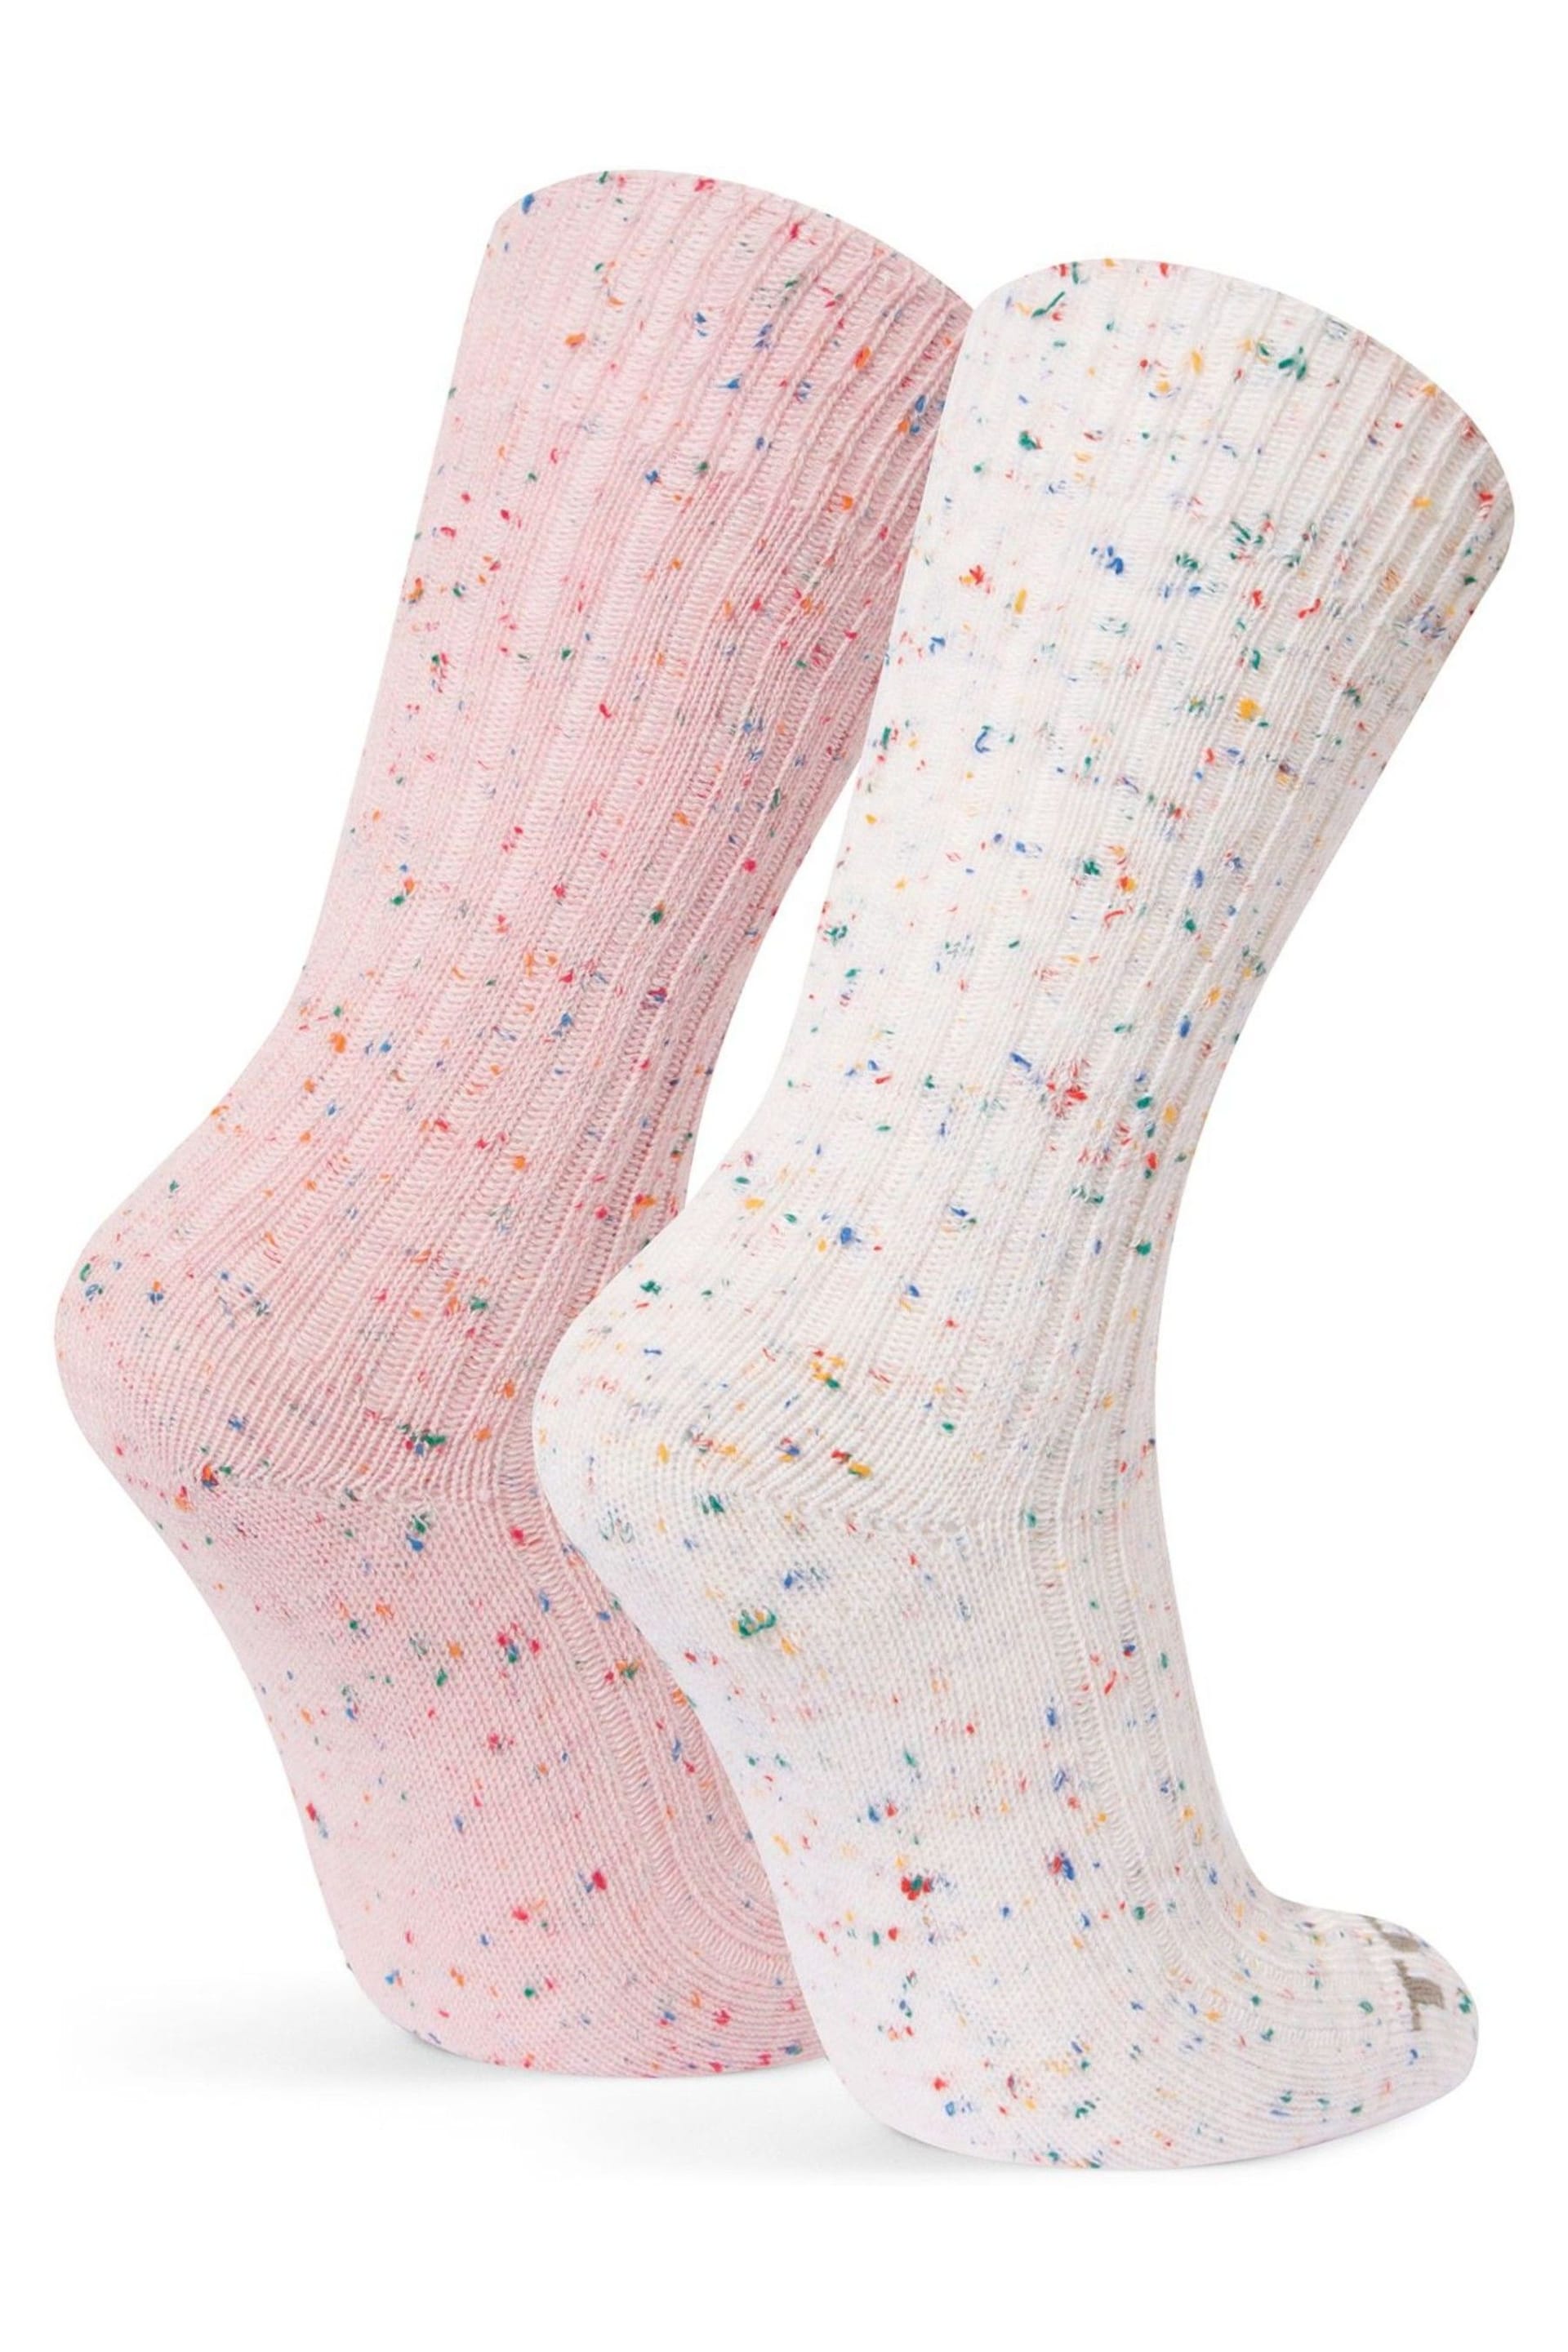 Tog 24 Pink Opora Trek Socks 2 Pack - Image 2 of 2